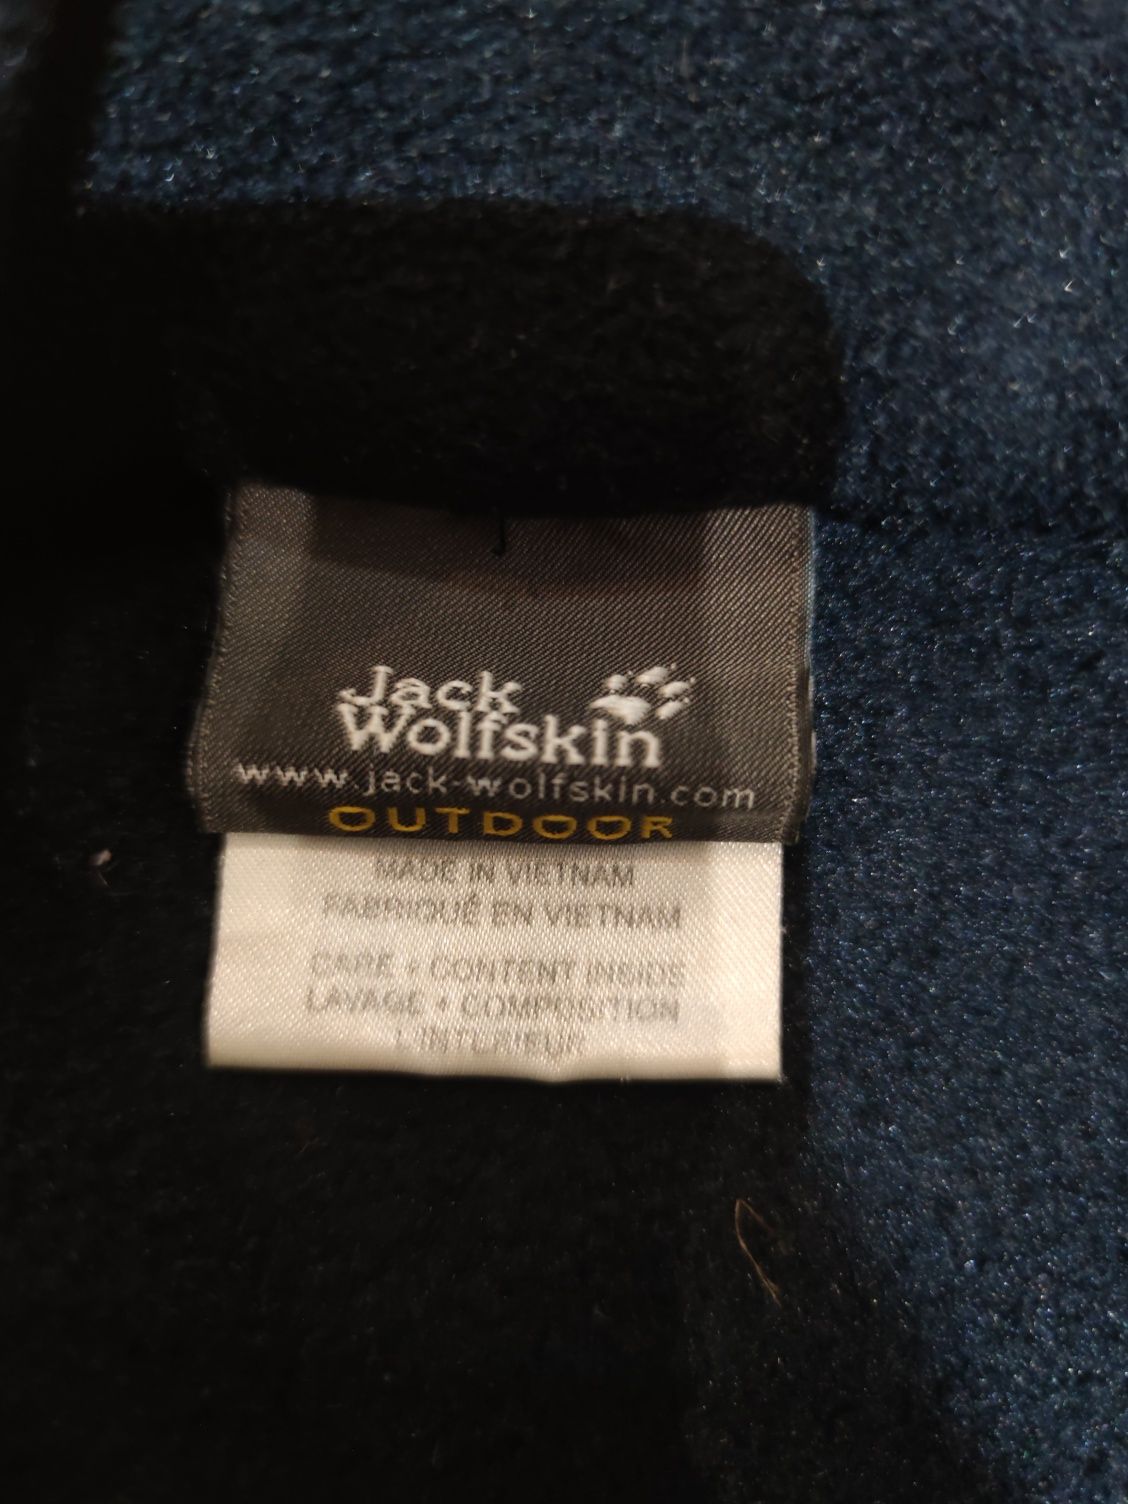 Bluza męska firmy Jack Wolfskin